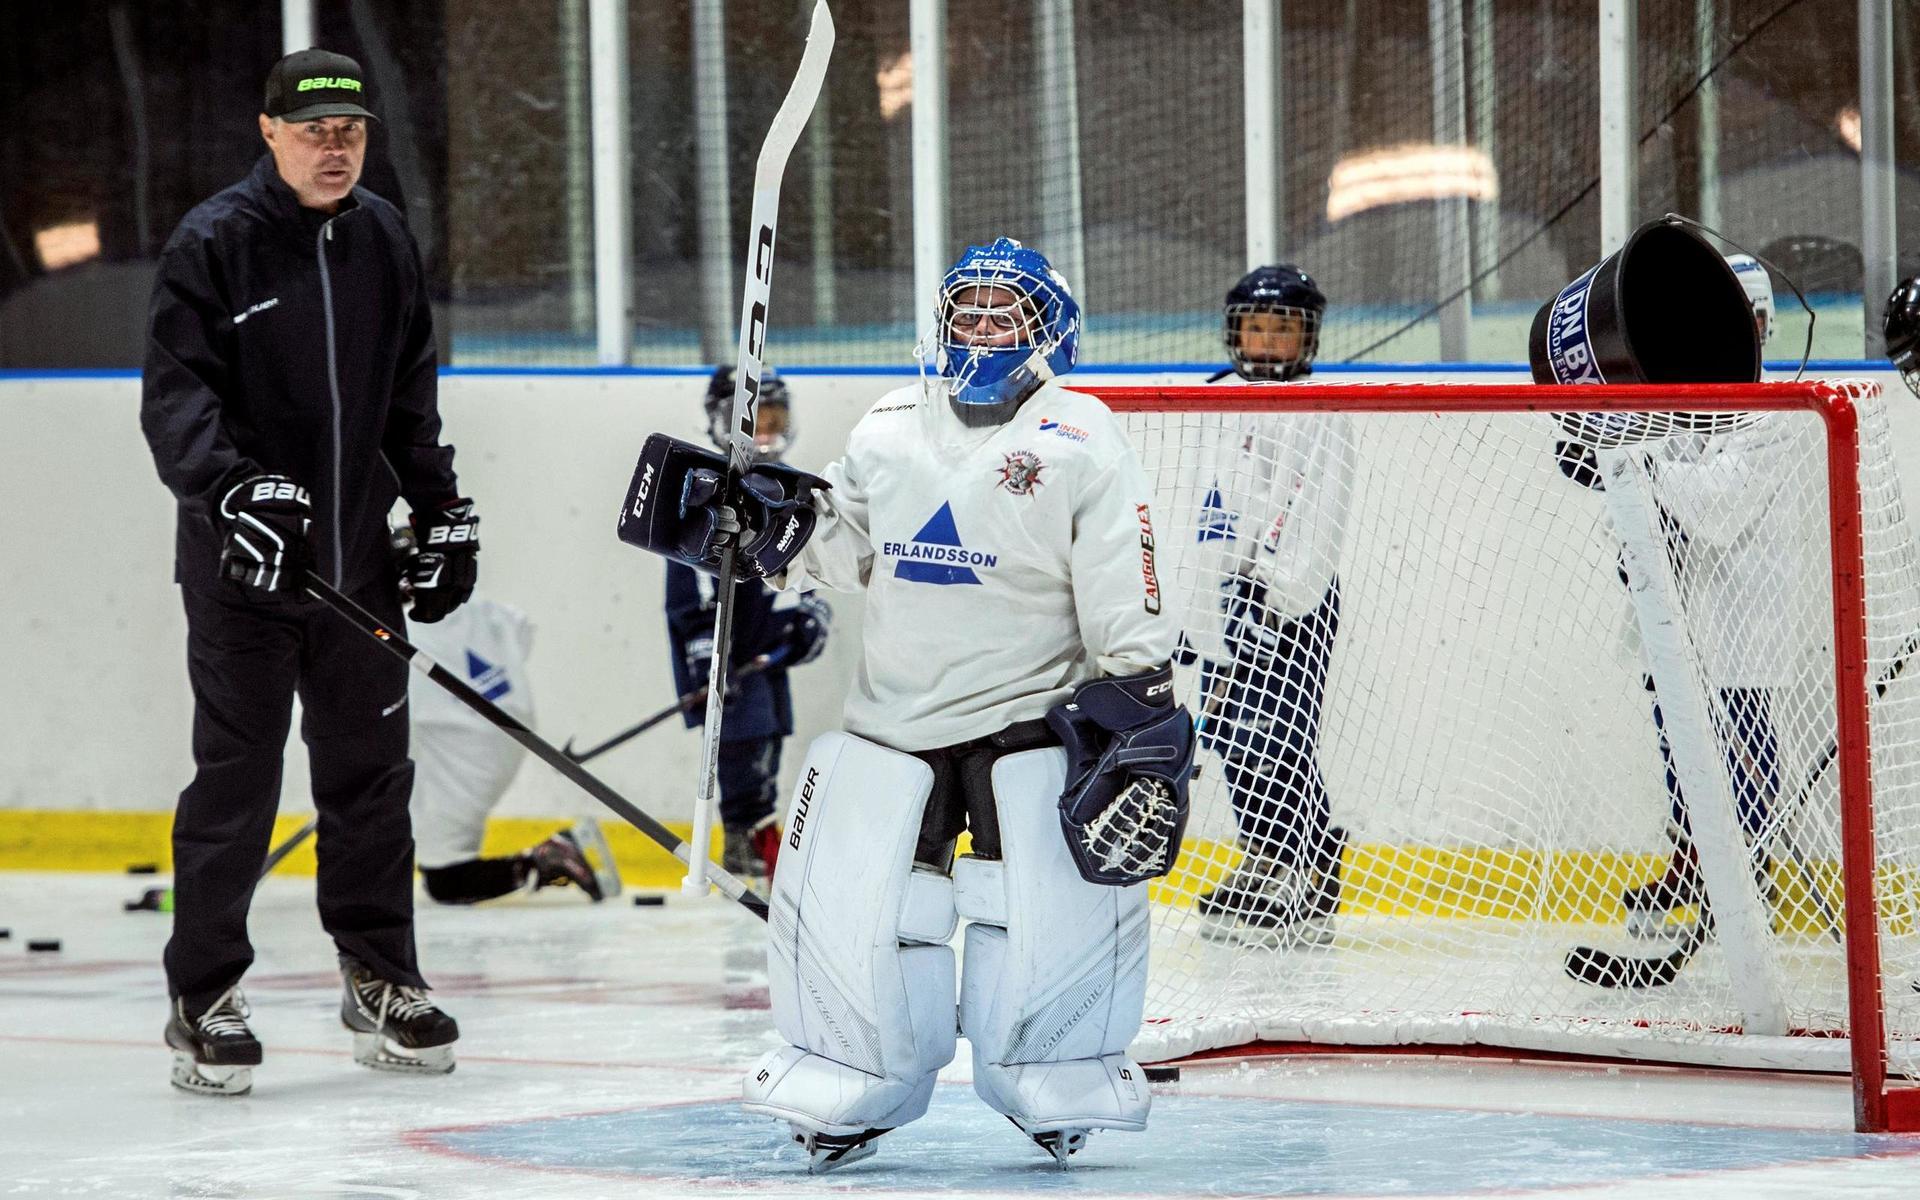 Hammers unga målvakt Jon Olsen fick goda råd och träning av KHL-målvaktstränaren Stefan Persson under måndagens träningspass.